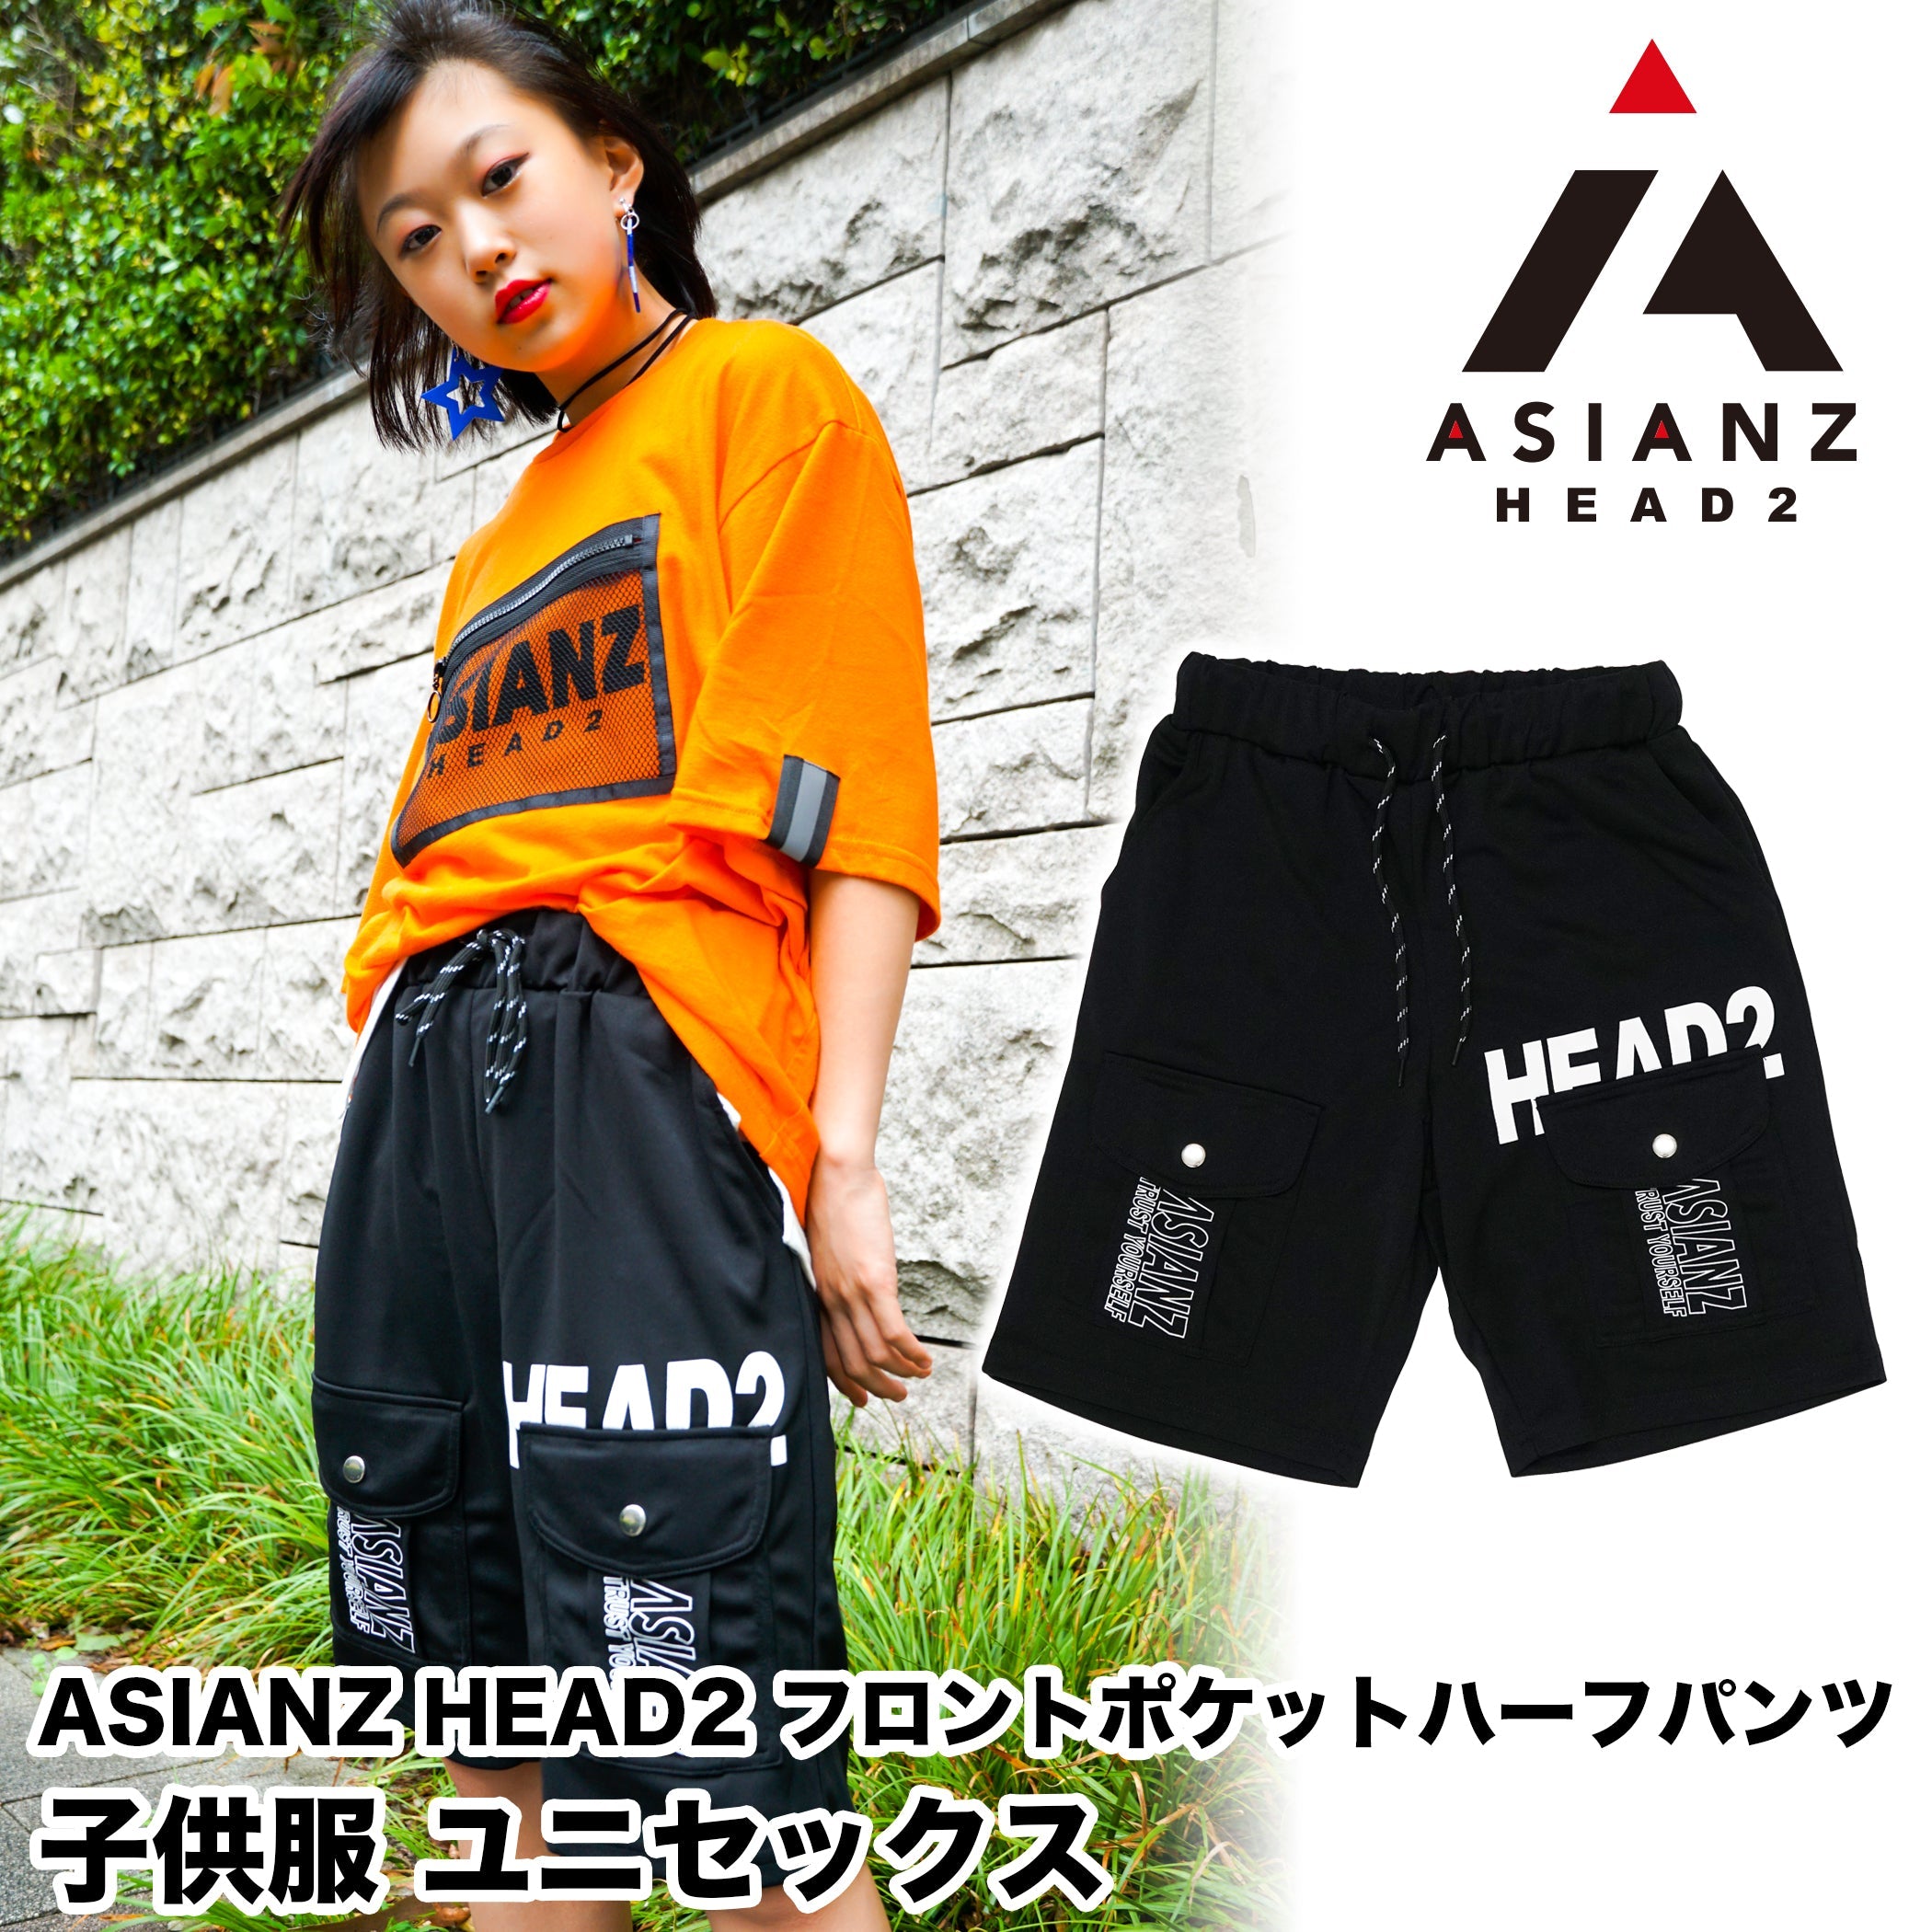 (セール商品) ASIANZ HEAD2 フロントポケットハーフパンツ キッズウェアー